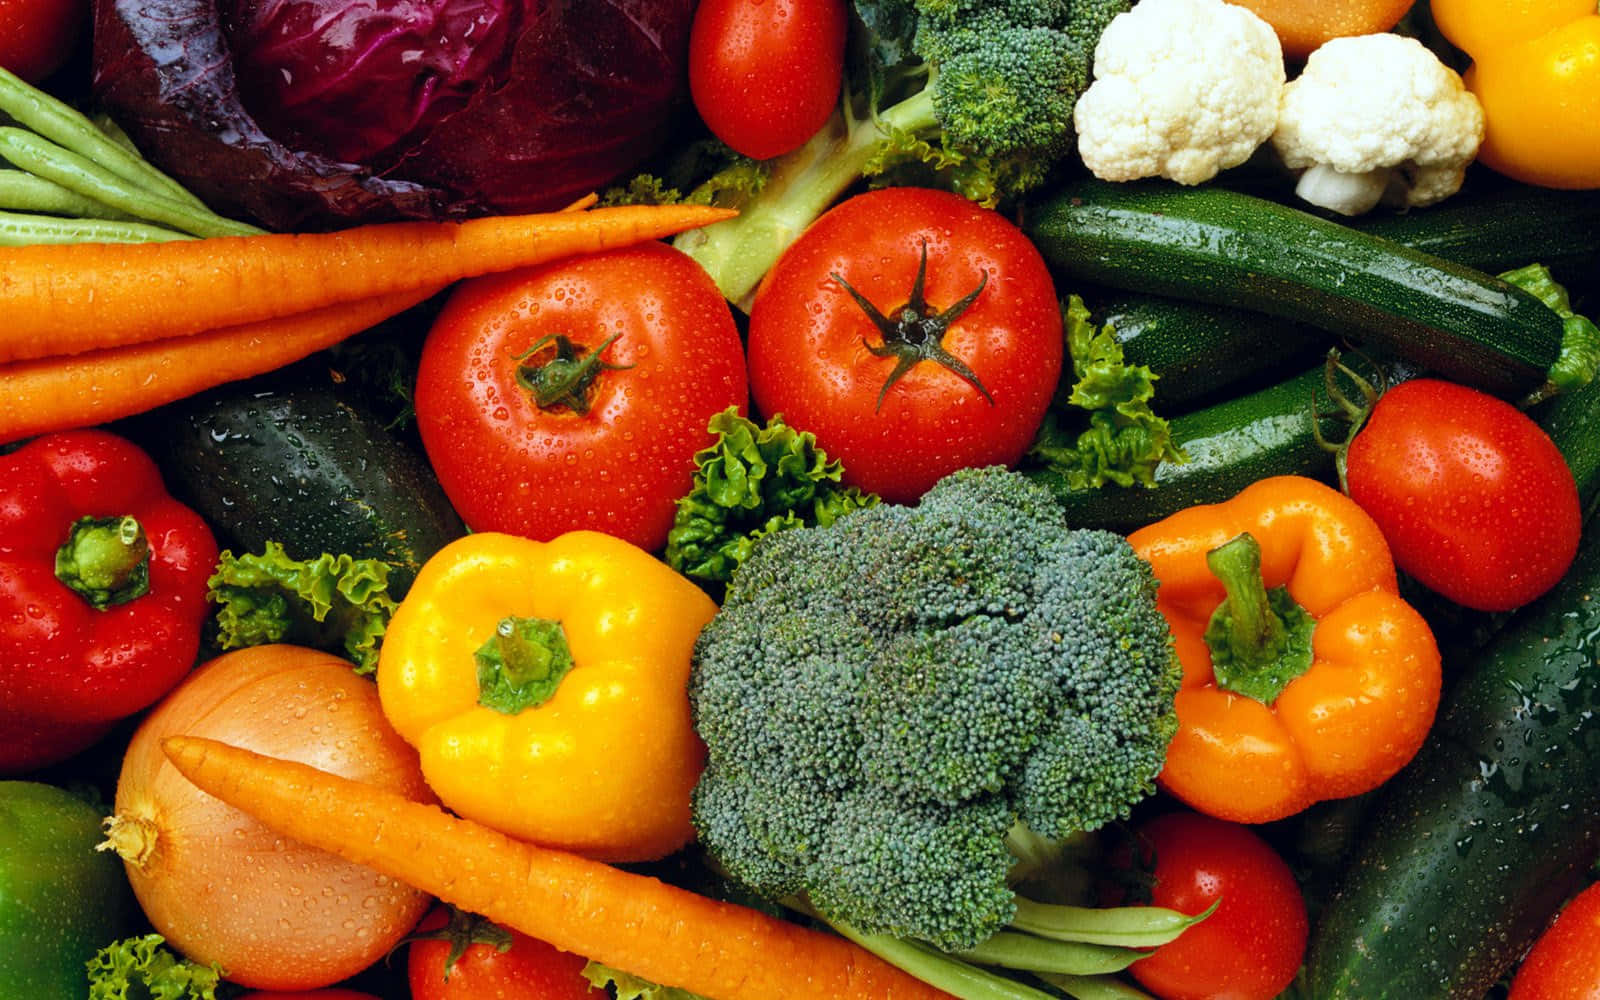 Fakta om grøntsager foto baggrund. Wallpaper